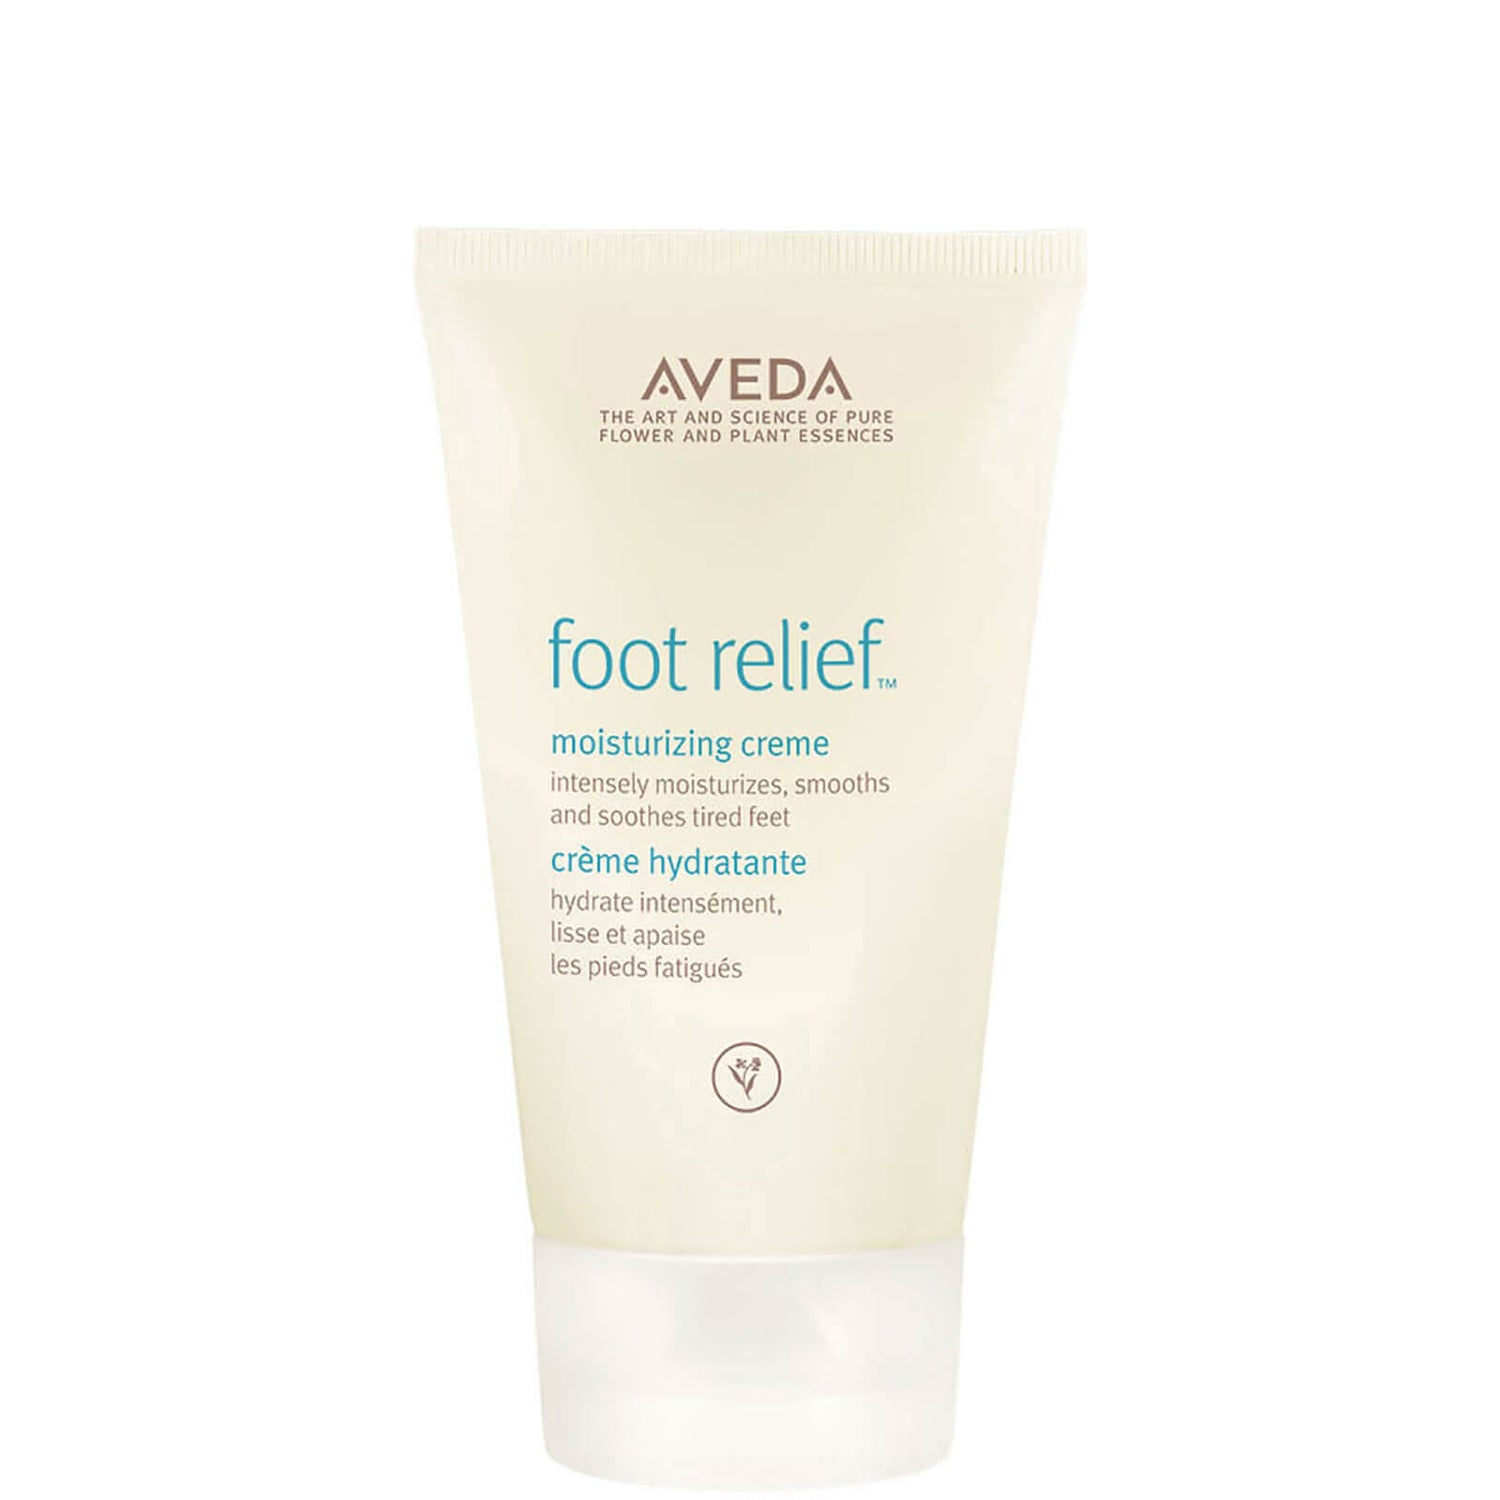 Aveda Foot Relief - 125 ml